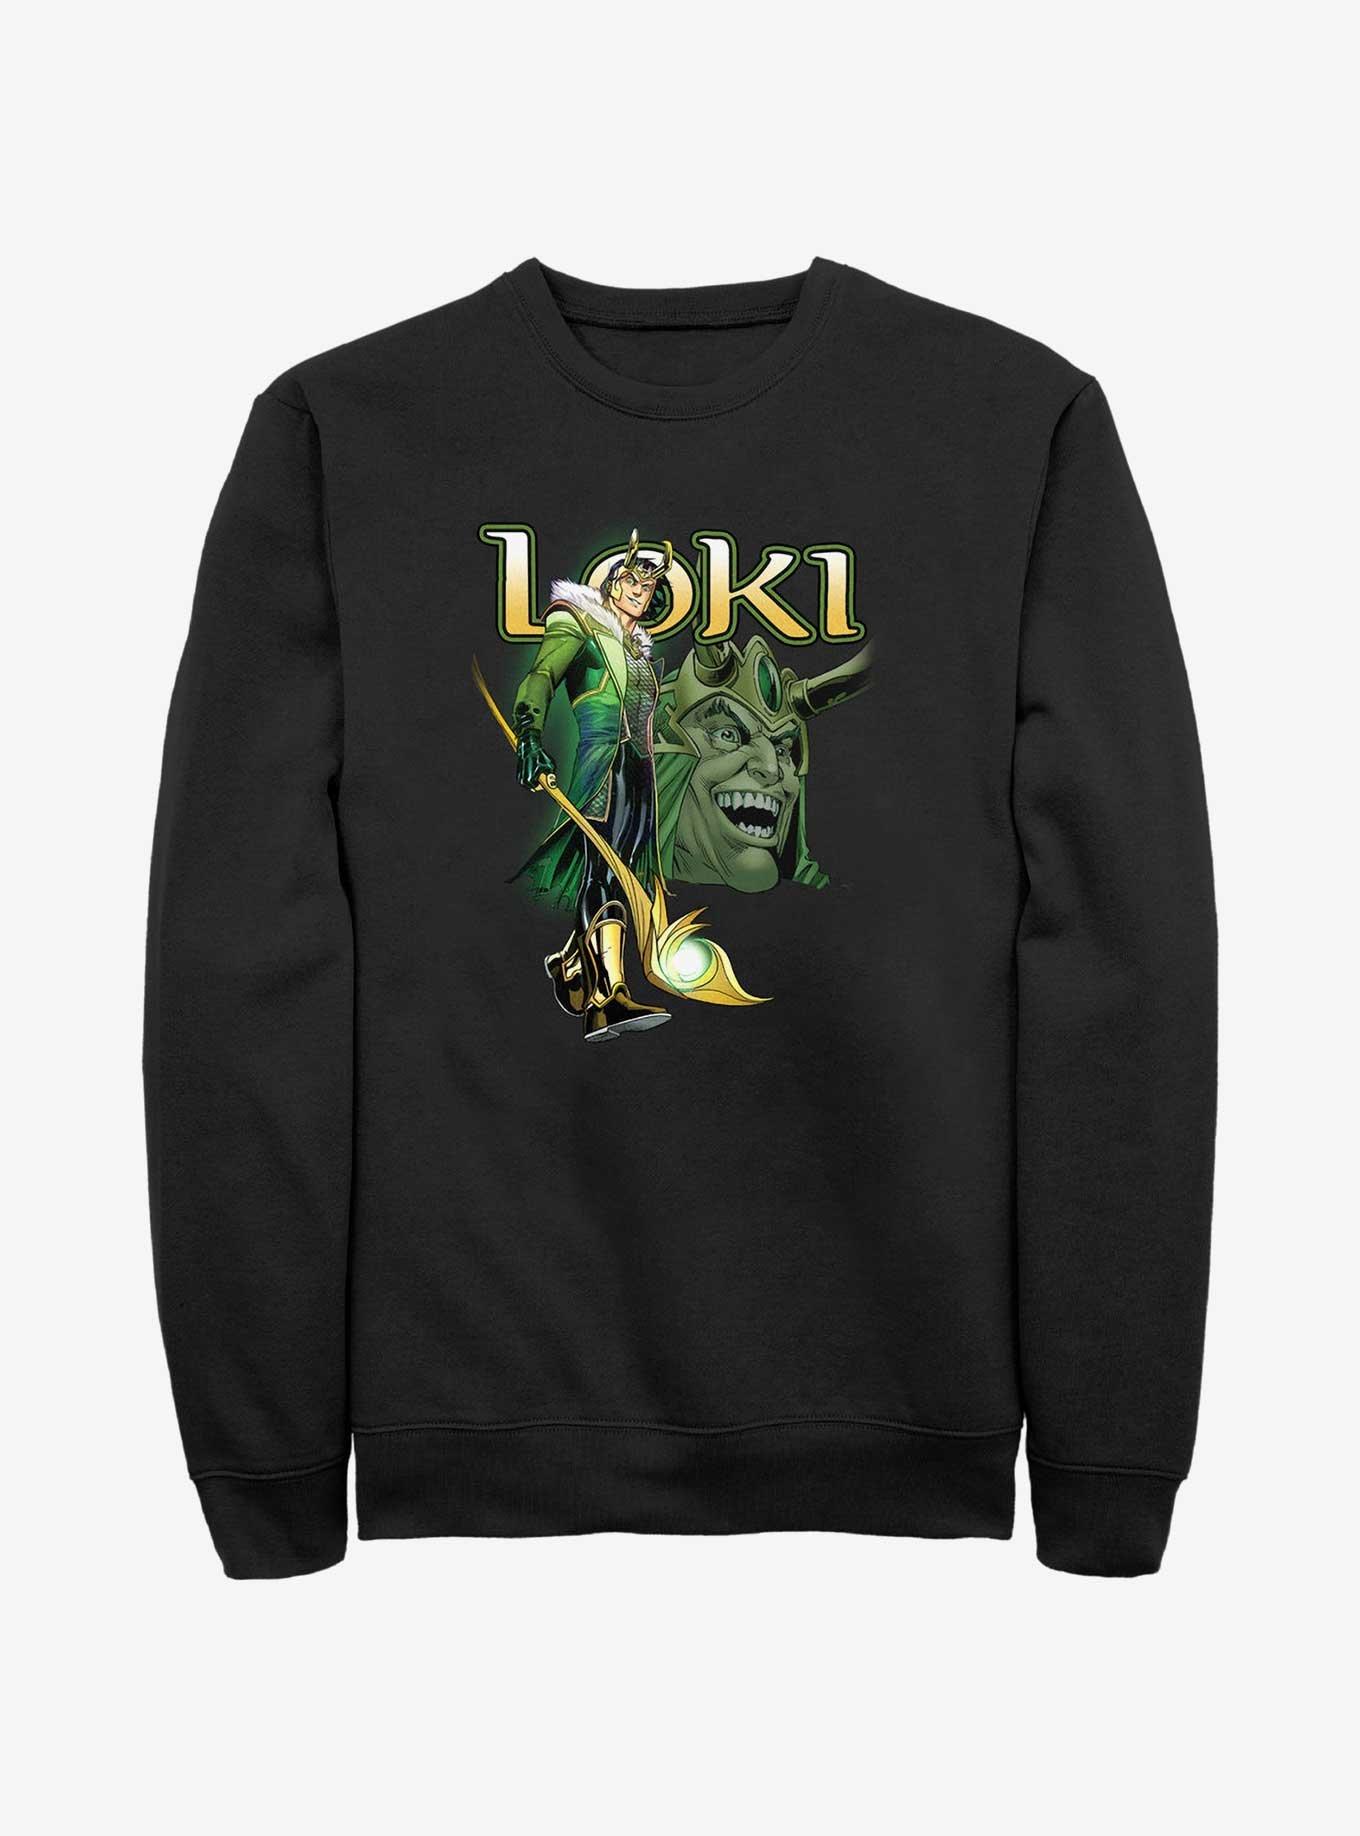 Marvel Loki Mischievous Grin Sweatshirt, BLACK, hi-res